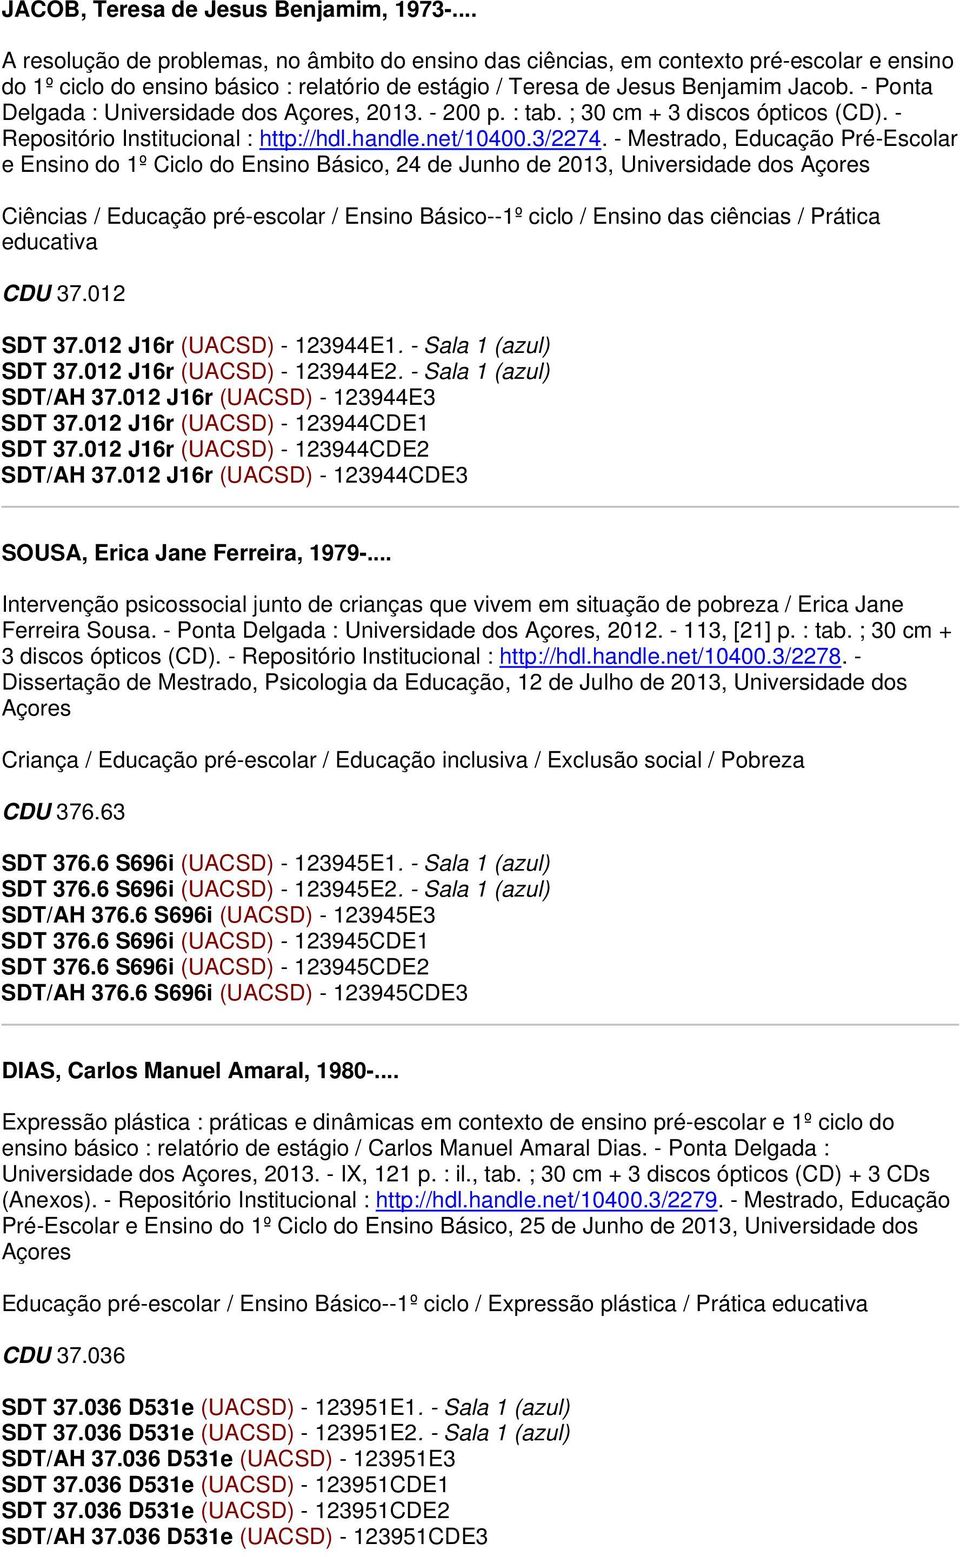 - Ponta Delgada : Universidade dos Açores, 2013. - 200 p. : tab. ; 30 cm + 3 discos ópticos (CD). - Repositório Institucional : http://hdl.handle.net/10400.3/2274.